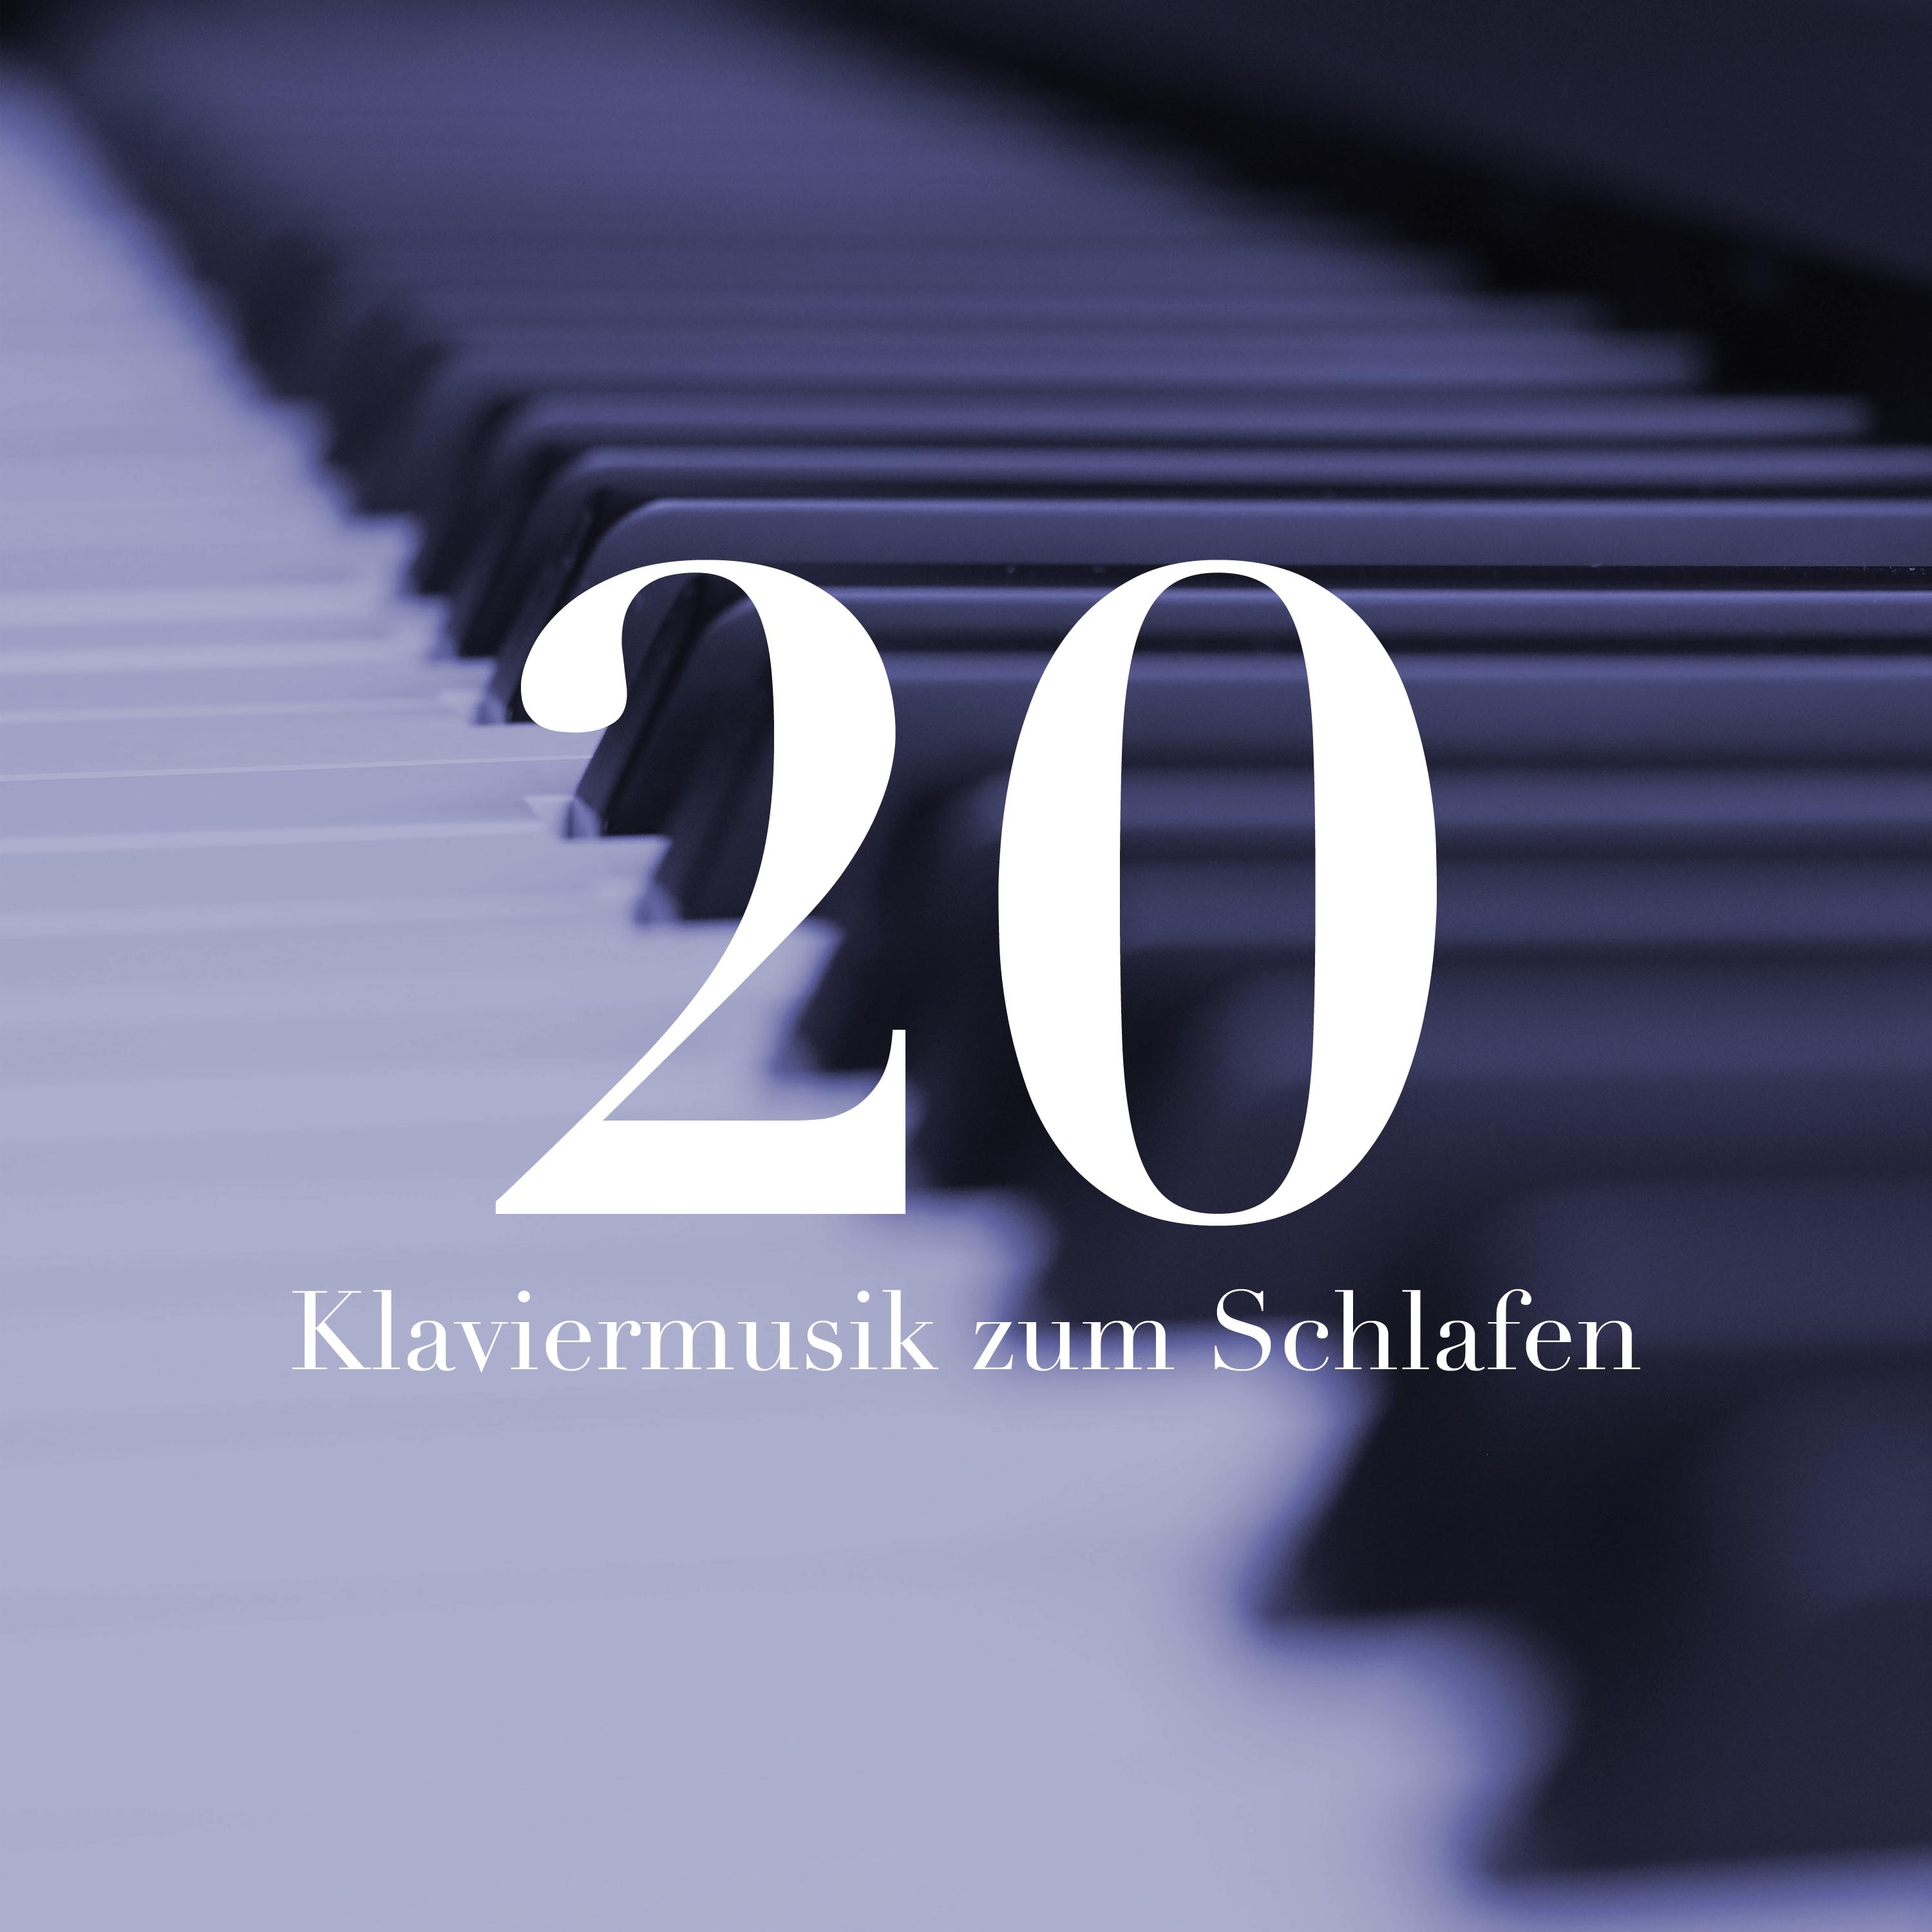 Ludwig van Beethoven	Piano Sonata No.14 in C-Sharp Minor Op. 27 No. 2 "Moonlight Sonata": I. Adagio Sostenuto